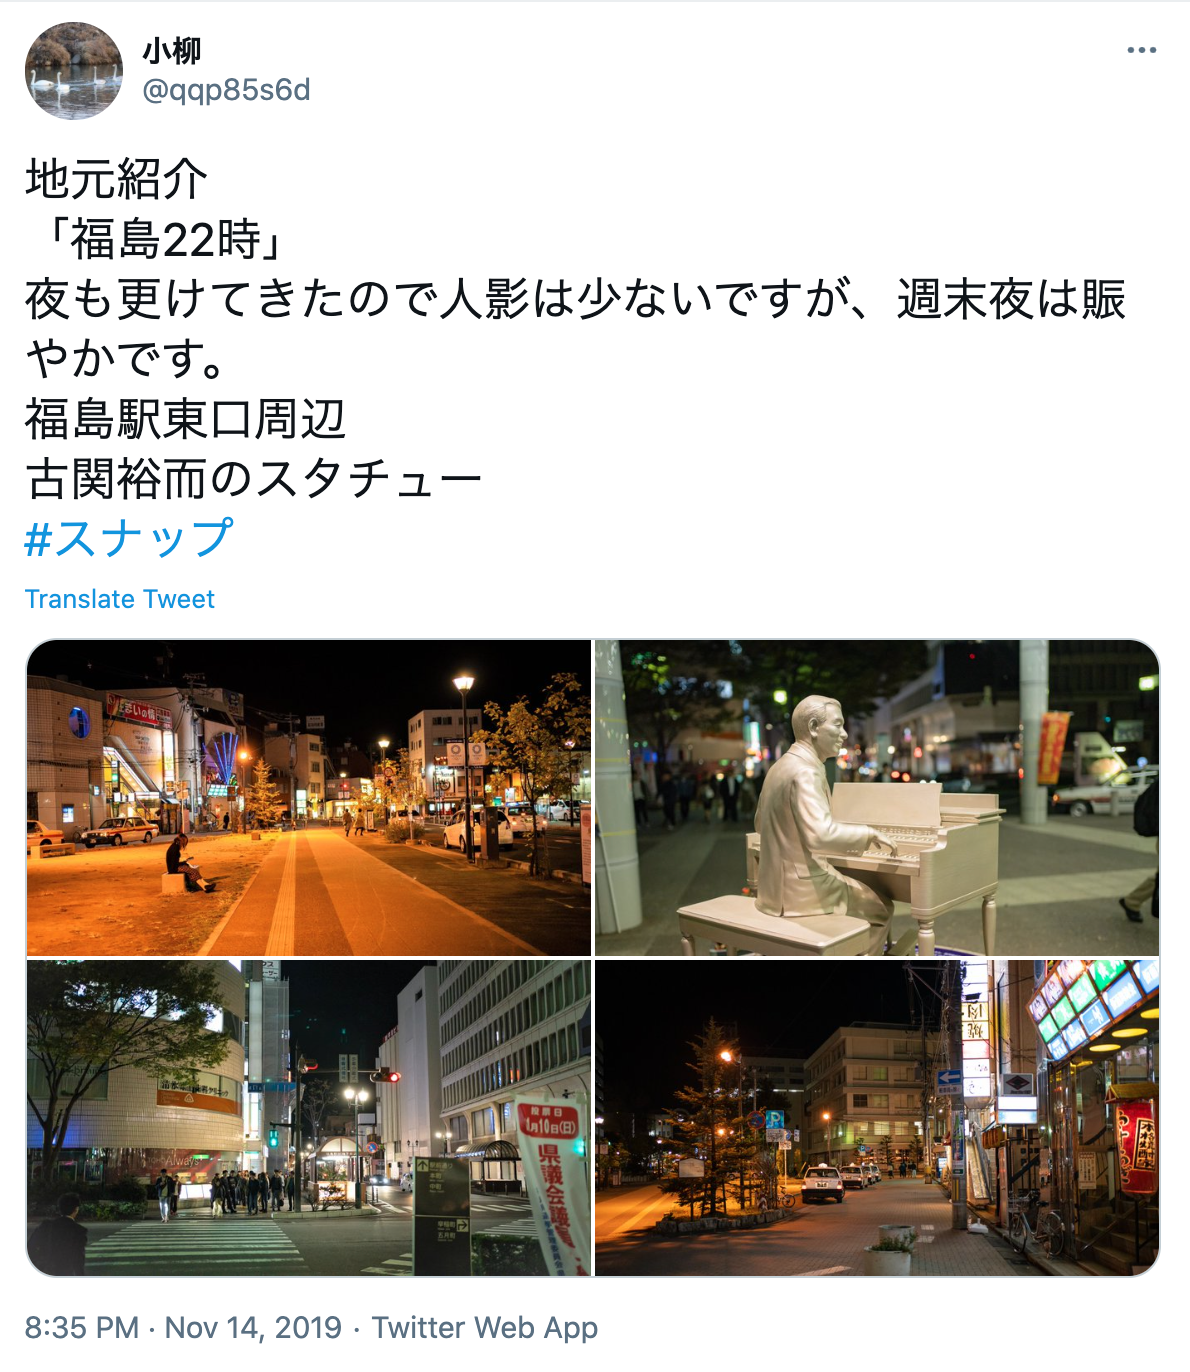 福島でナンパするならココがおすすめ 女性と出会えるスポット14選 出会いをサポートするマッチングアプリ 恋活 占いメディア シッテク